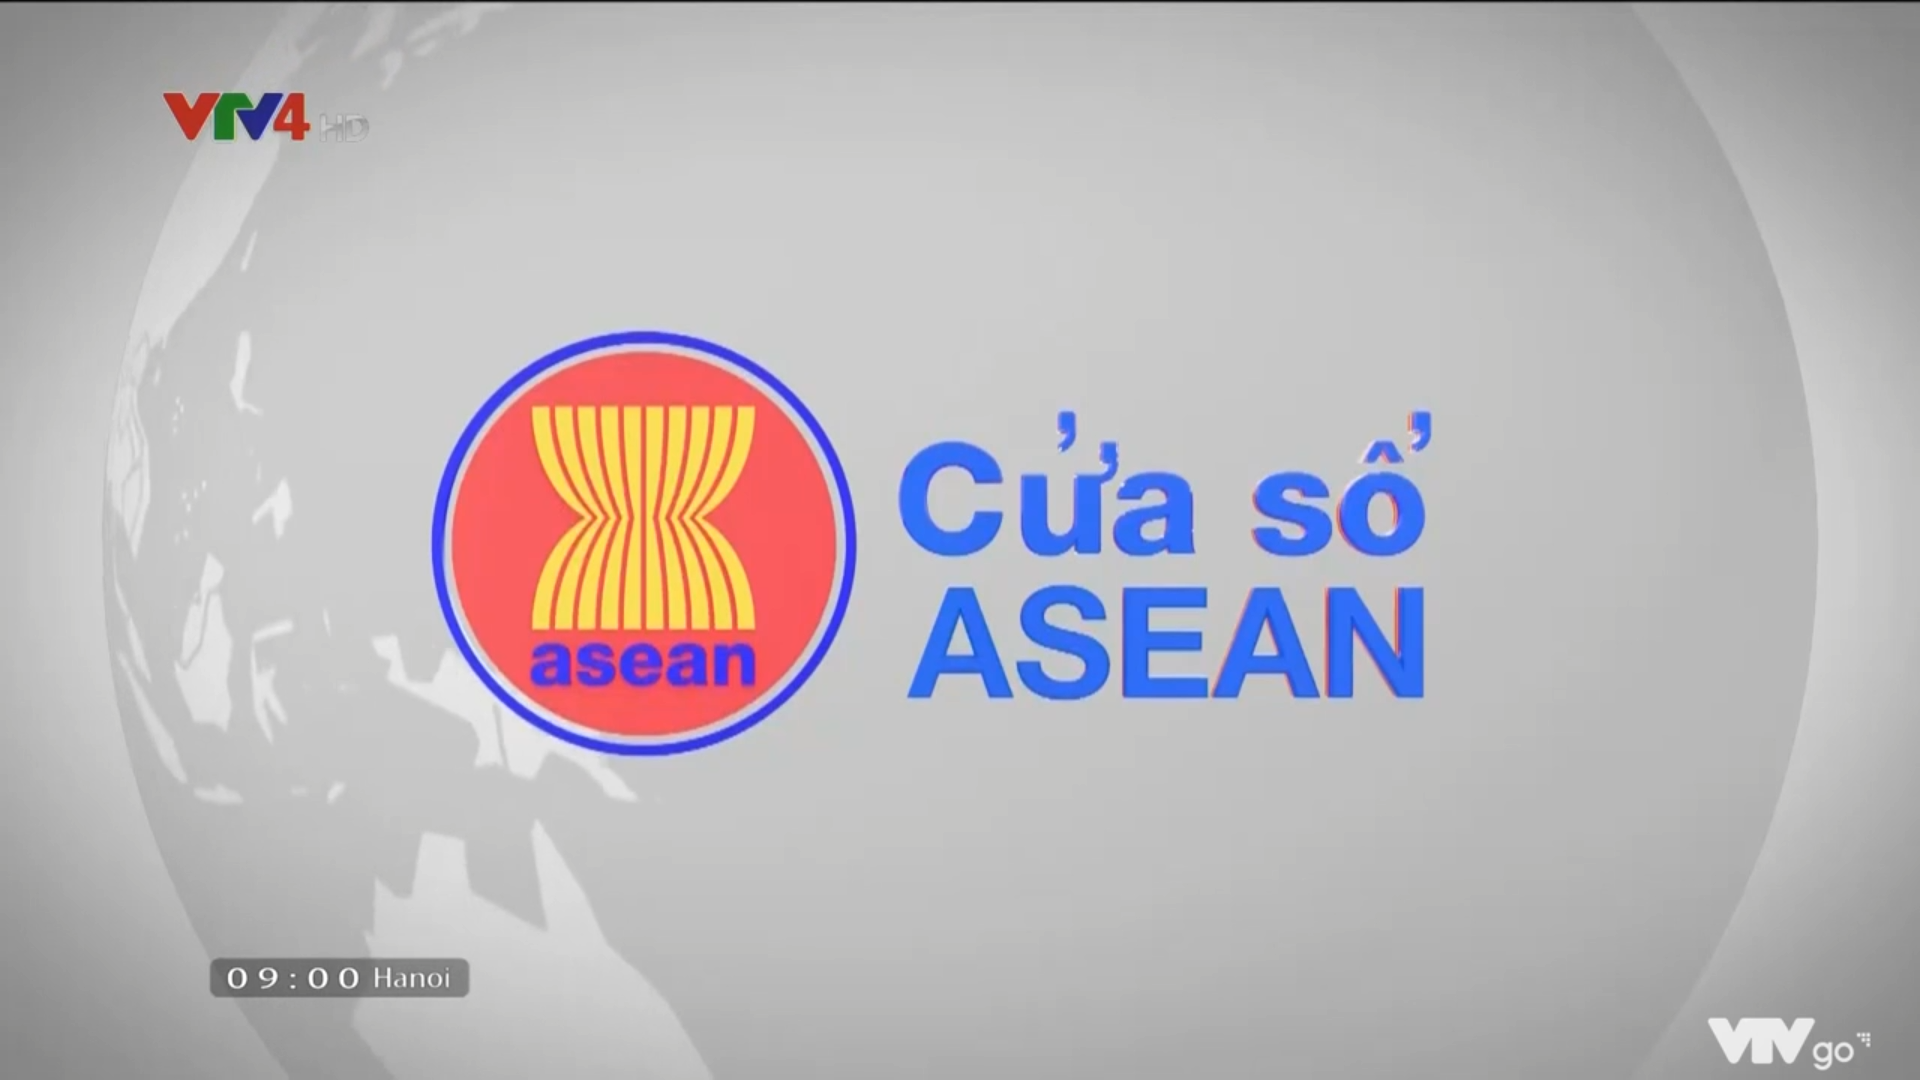 Logo cửa sổ ASEAN cập nhật mới năm 2024, mang lại sự năng động và hiện đại. Với thiết kế đơn giản, màu sắc tươi sáng và ý nghĩa sâu sắc, logo này là biểu tượng của sự đoàn kết và phát triển trong khu vực. Hãy cùng nhau dùng logo này để tỏa sáng tinh thần ASEAN!